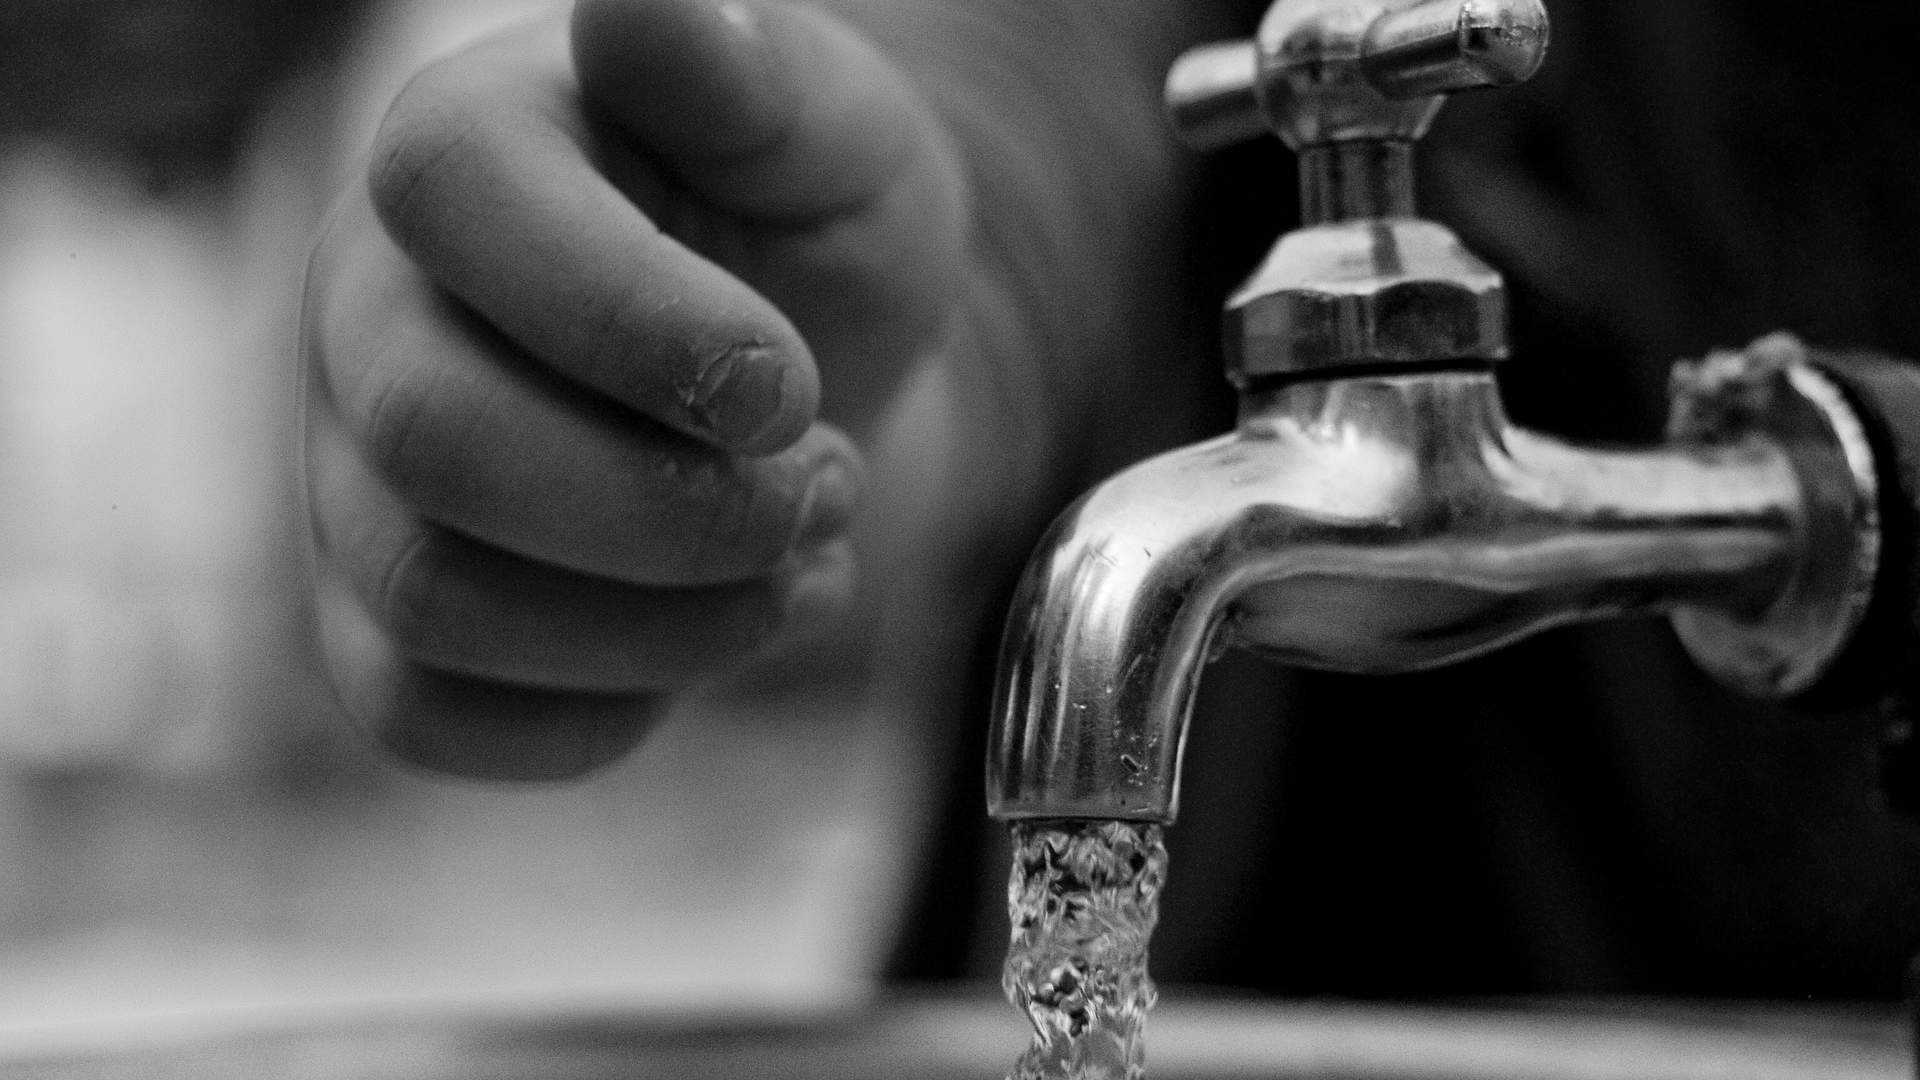 L'eau du robinet : quelles astuces pour la rendre meilleure ?